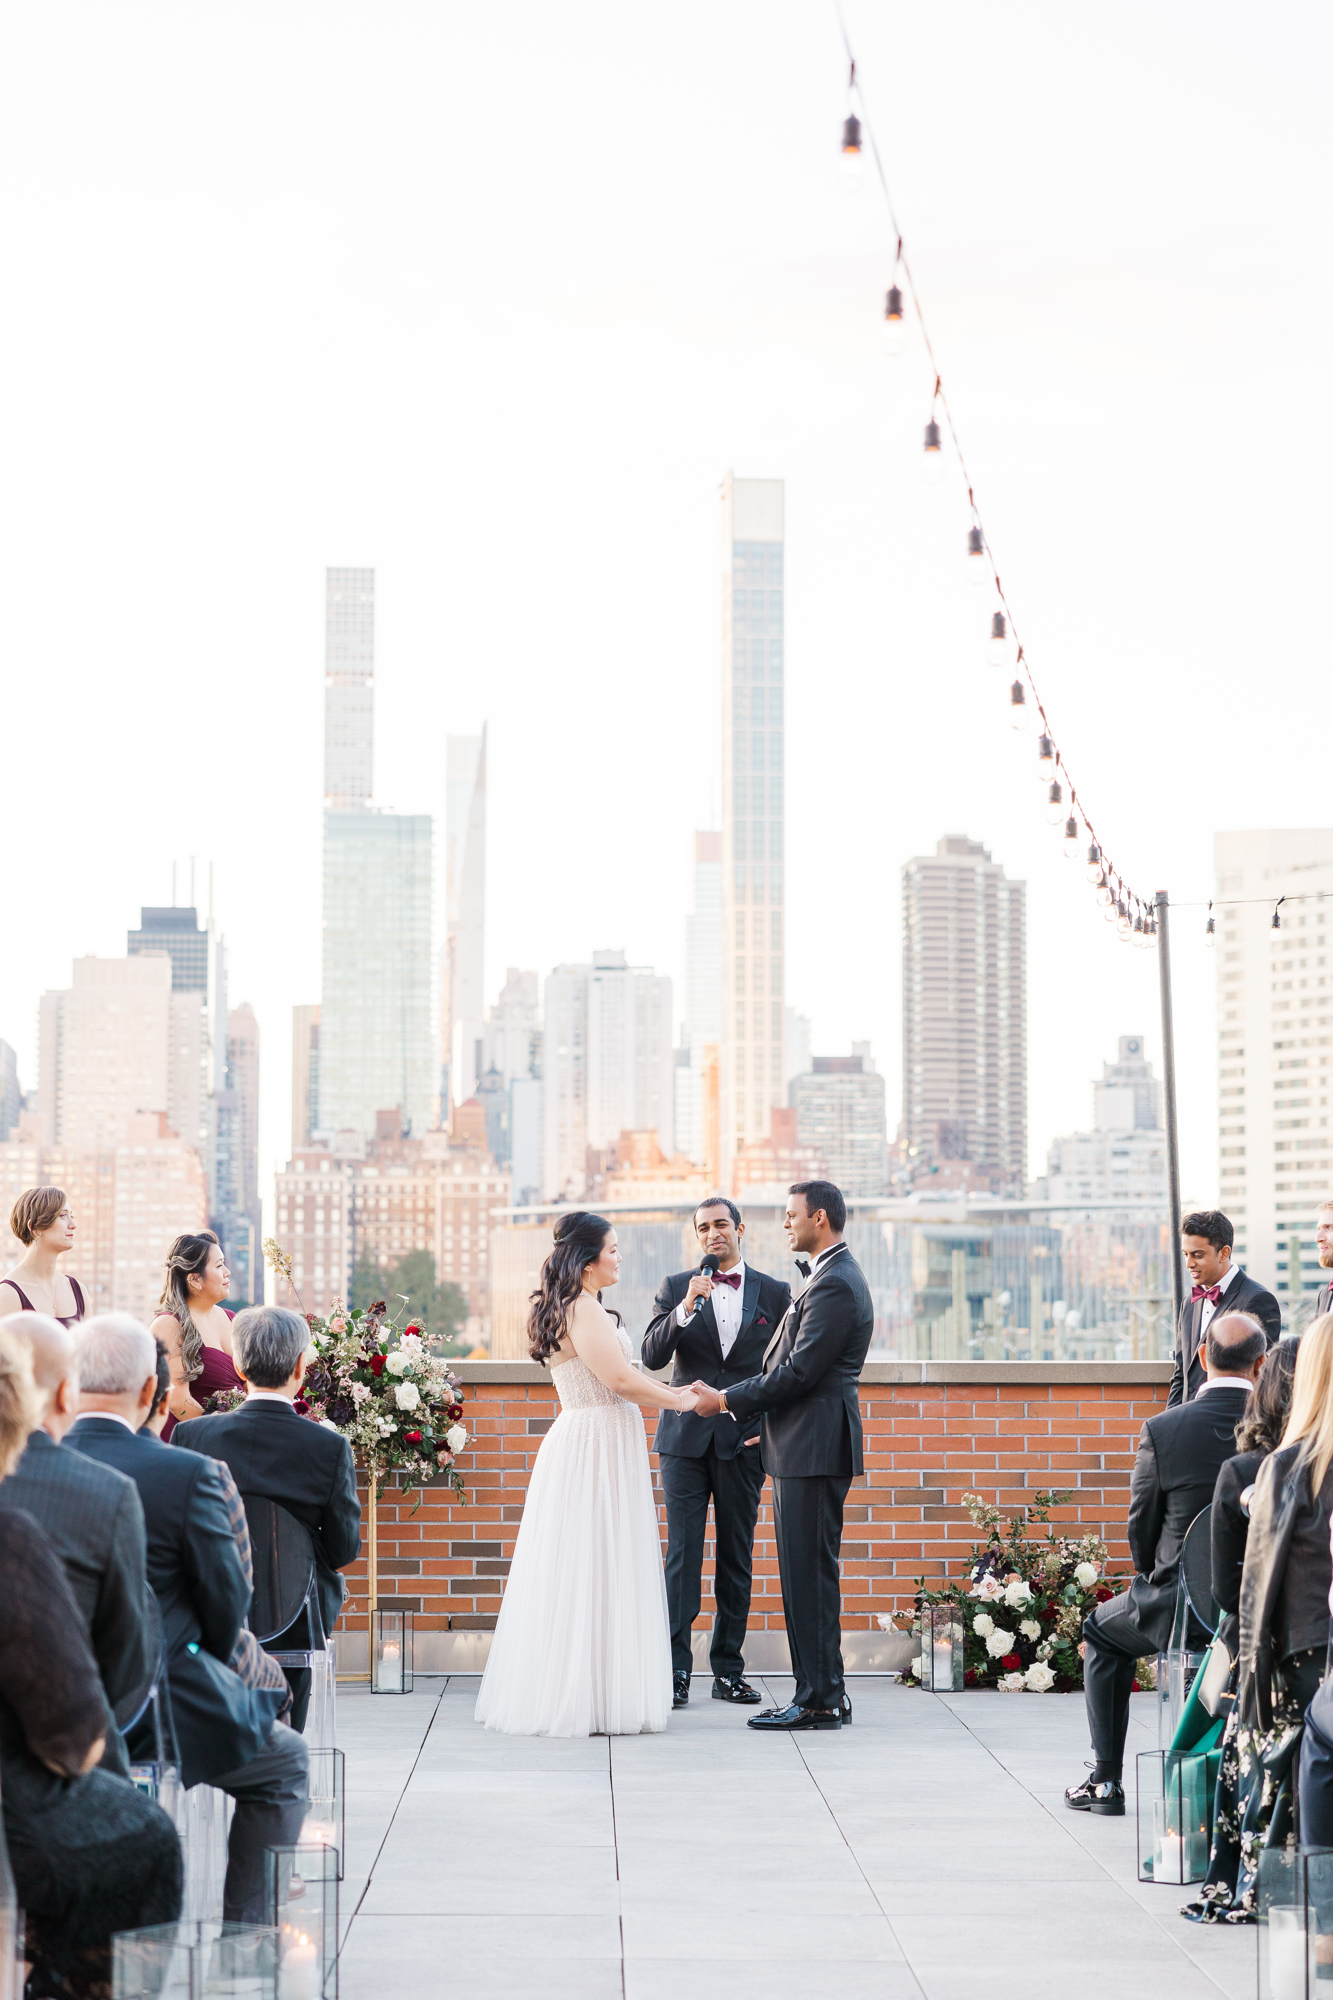 Breathtaking Outdoor NYC Wedding Venues